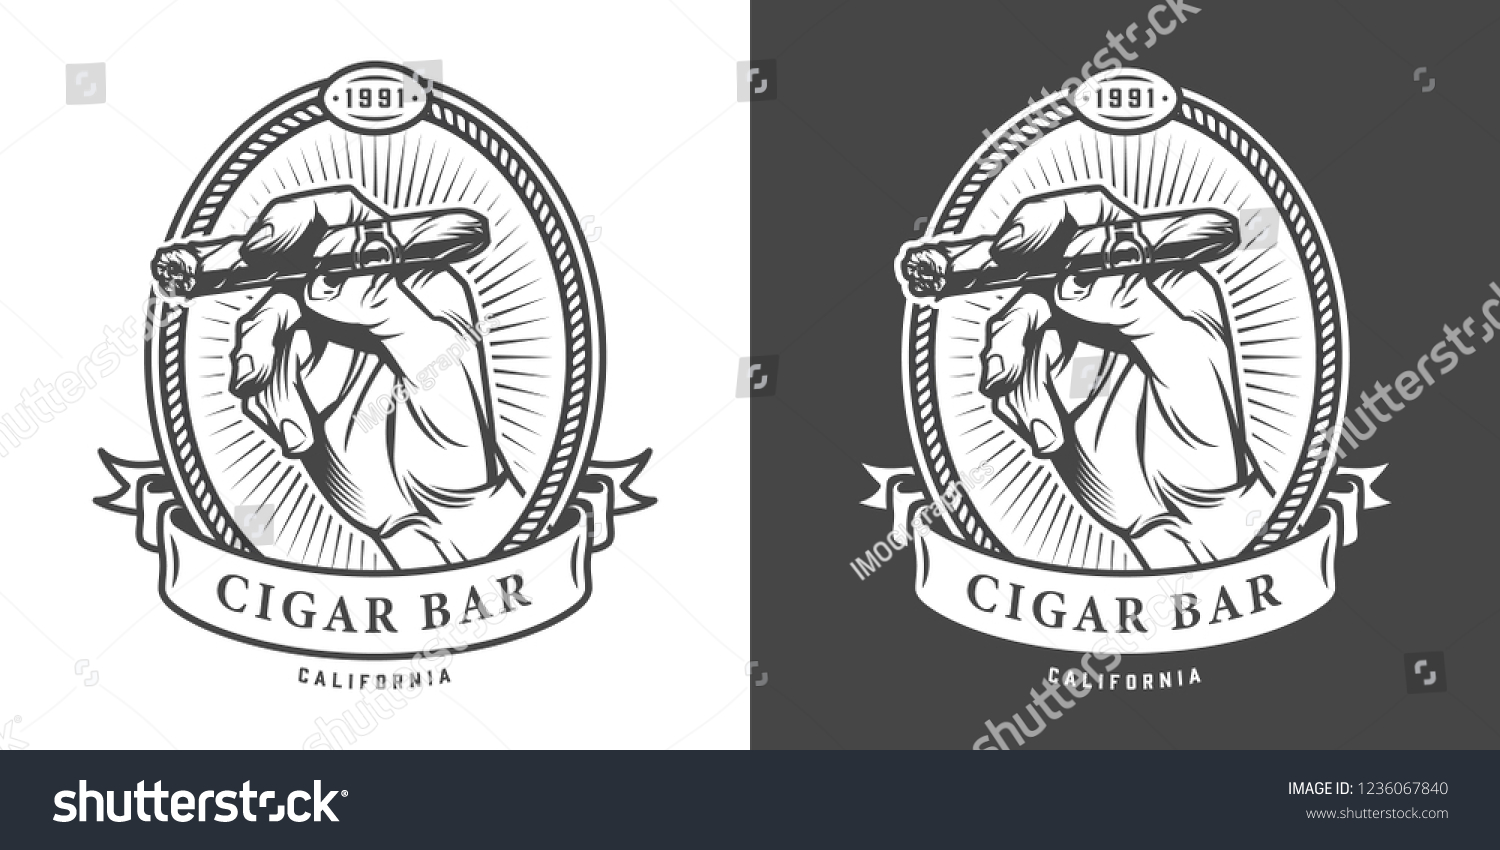 11 163 Imágenes De Cigars Bar Imágenes Fotos Y Vectores De Stock Shutterstock